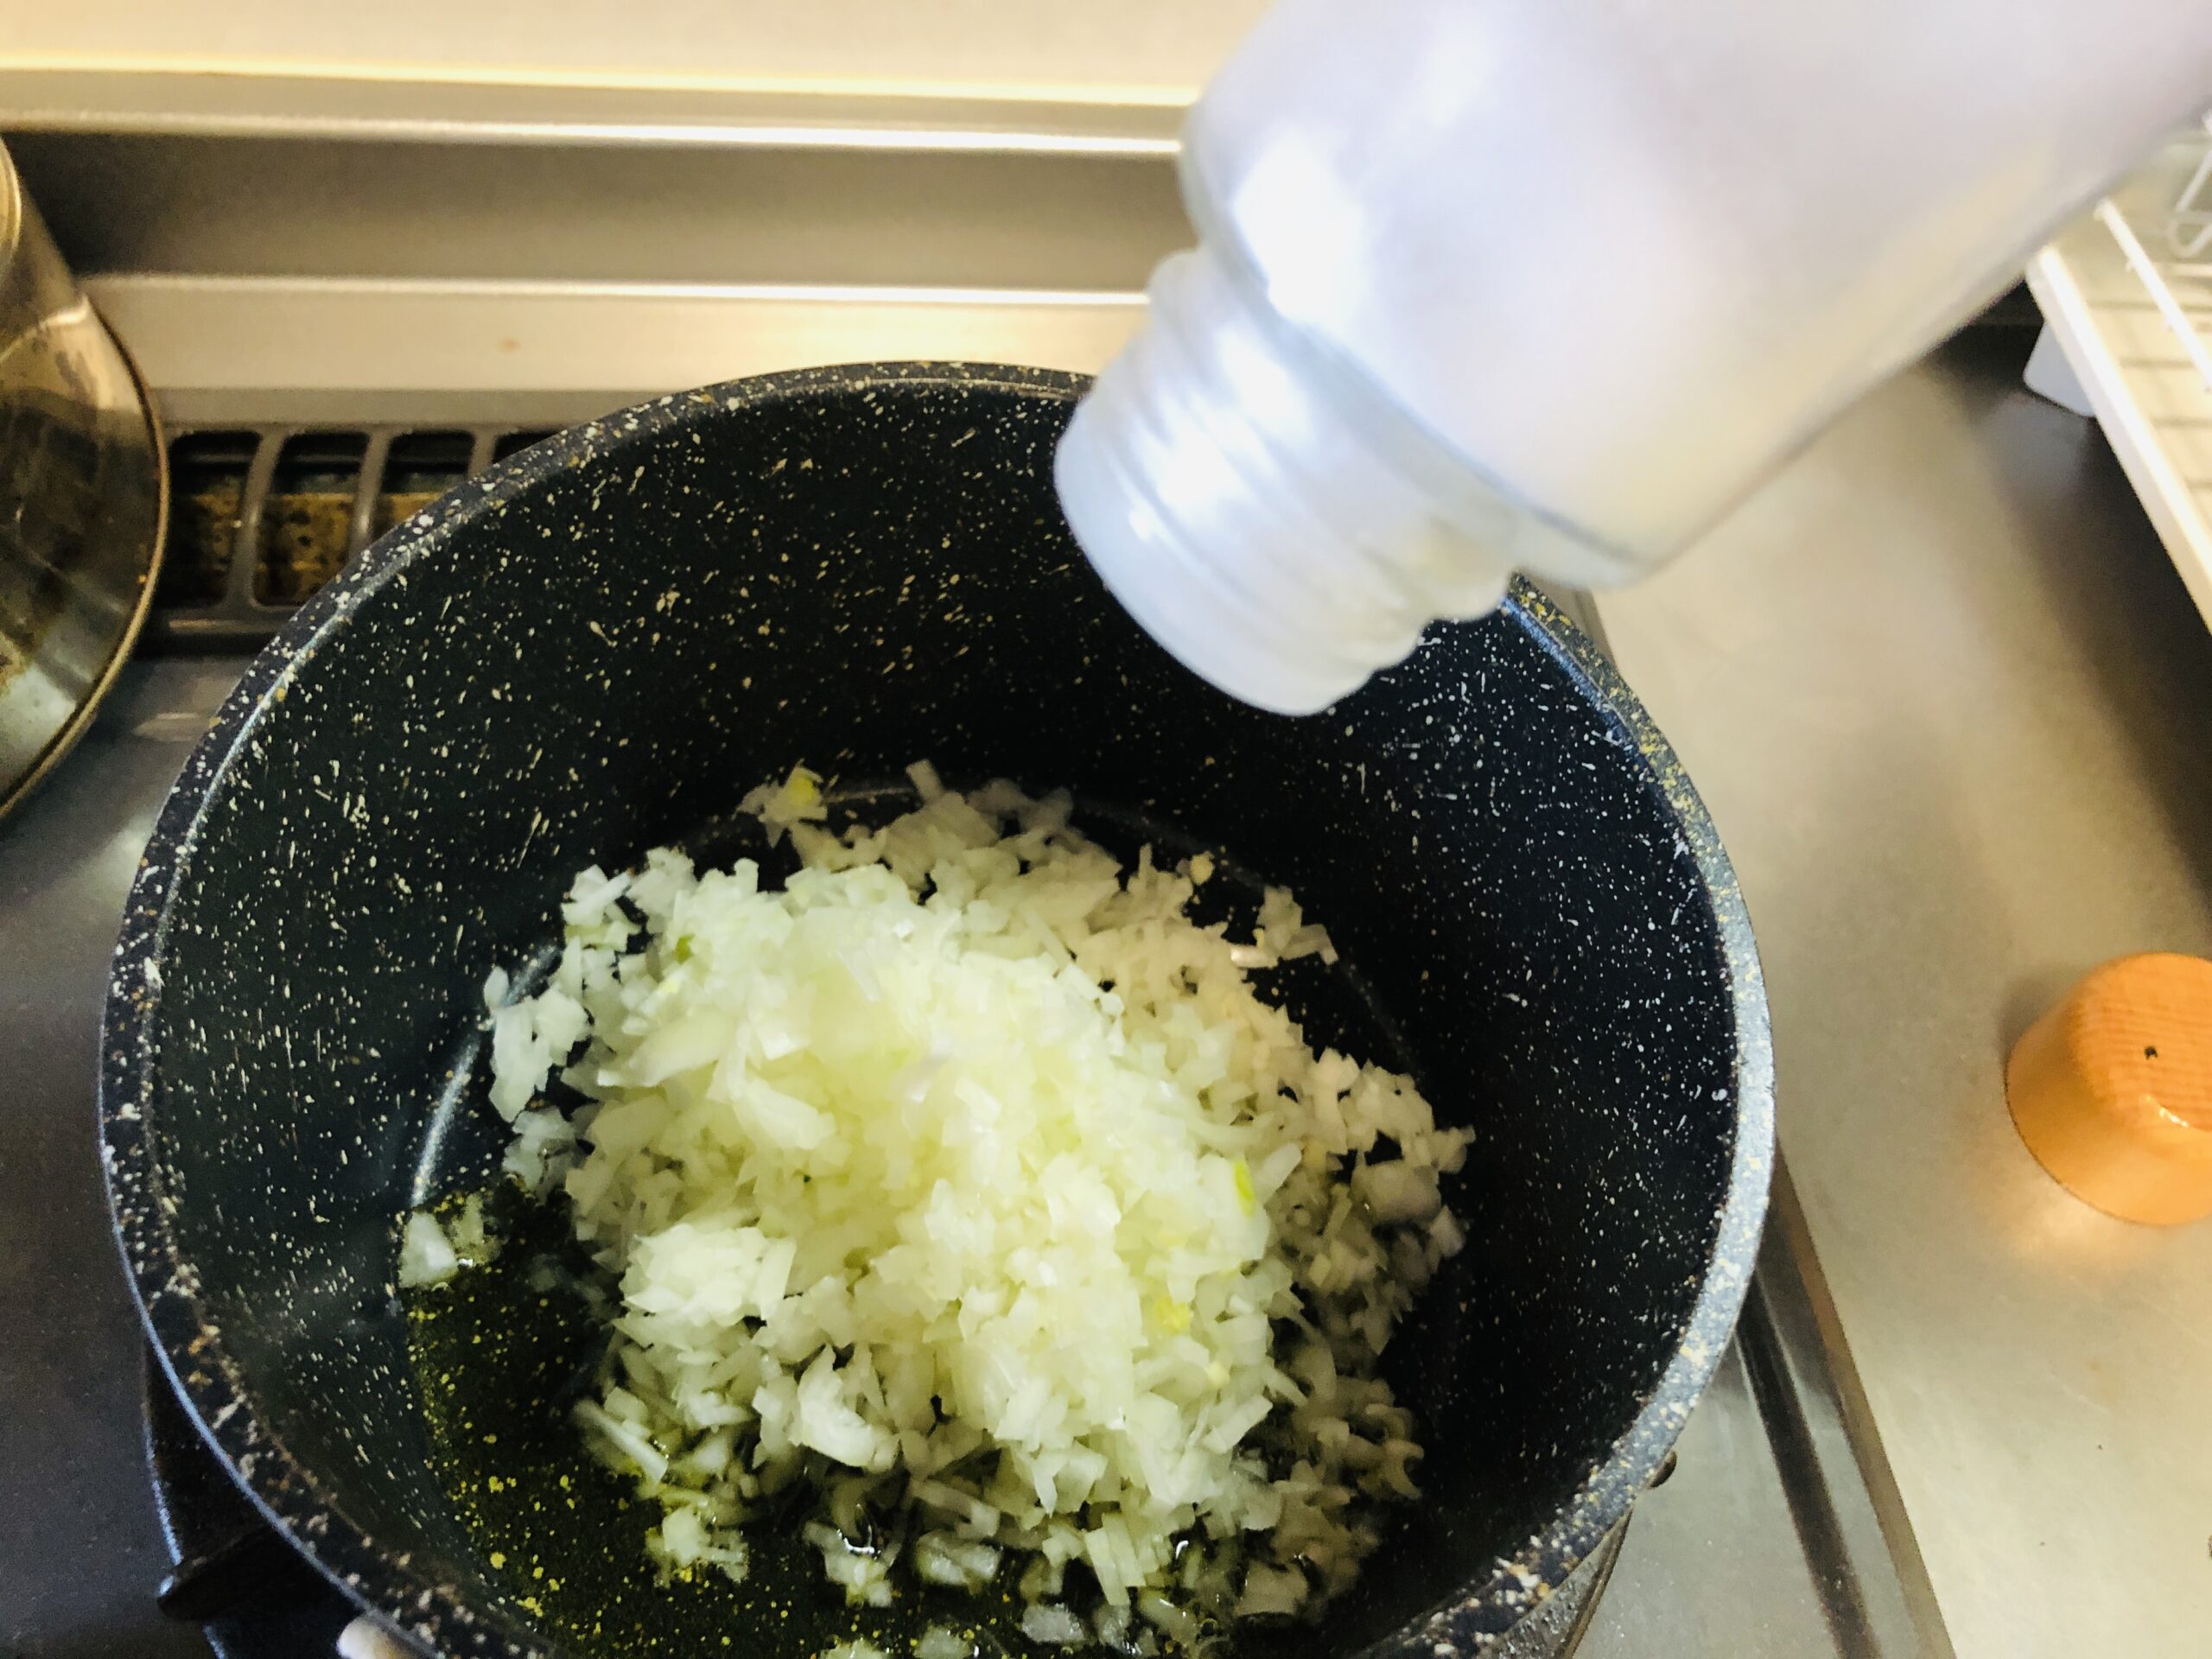 玉ねぎみじん切りと塩少々オリーブオイルを小鍋に入れた状態の画像です